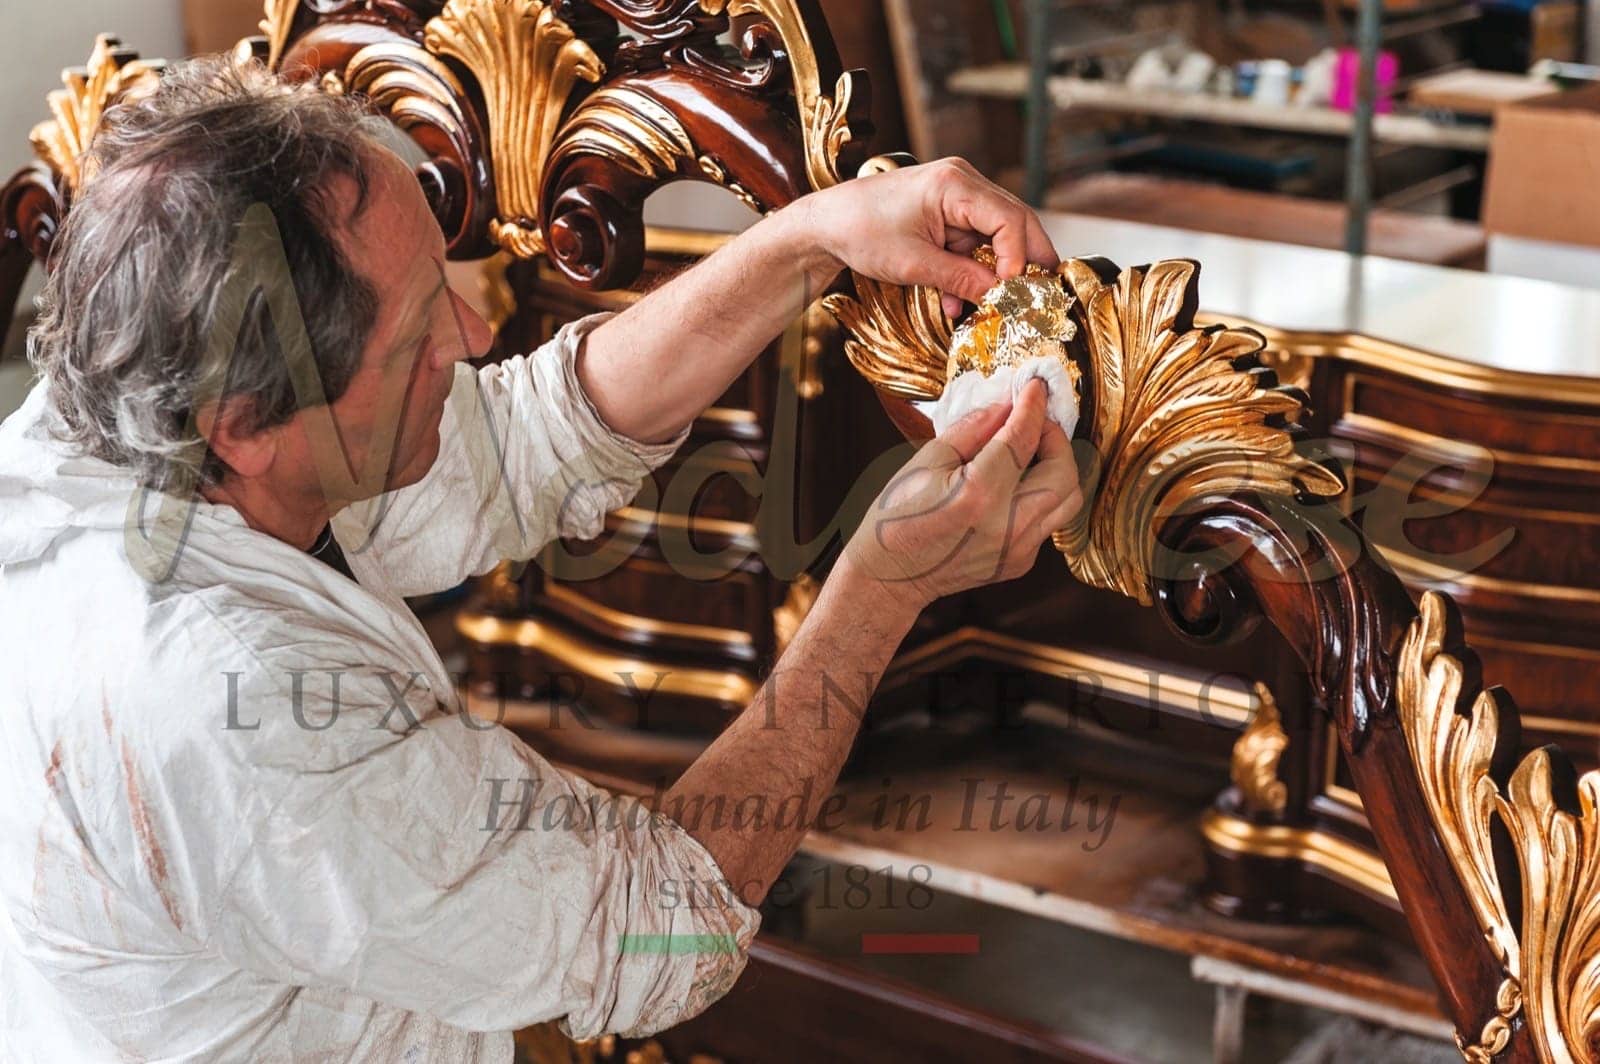 aplikace plátkového zlata tradiční nábytek královský klasický barokní benátský styl ručně vyráběné dekorace řemeslná zručnost italský dekor vila královský palác rezidenční projekty špičková kvalita masivní dřevěné materiály 24k zlato vyřezávané masivní dřevo dub řech pozornost k detailům talentovaný řemeslník nejlepší dovednosti